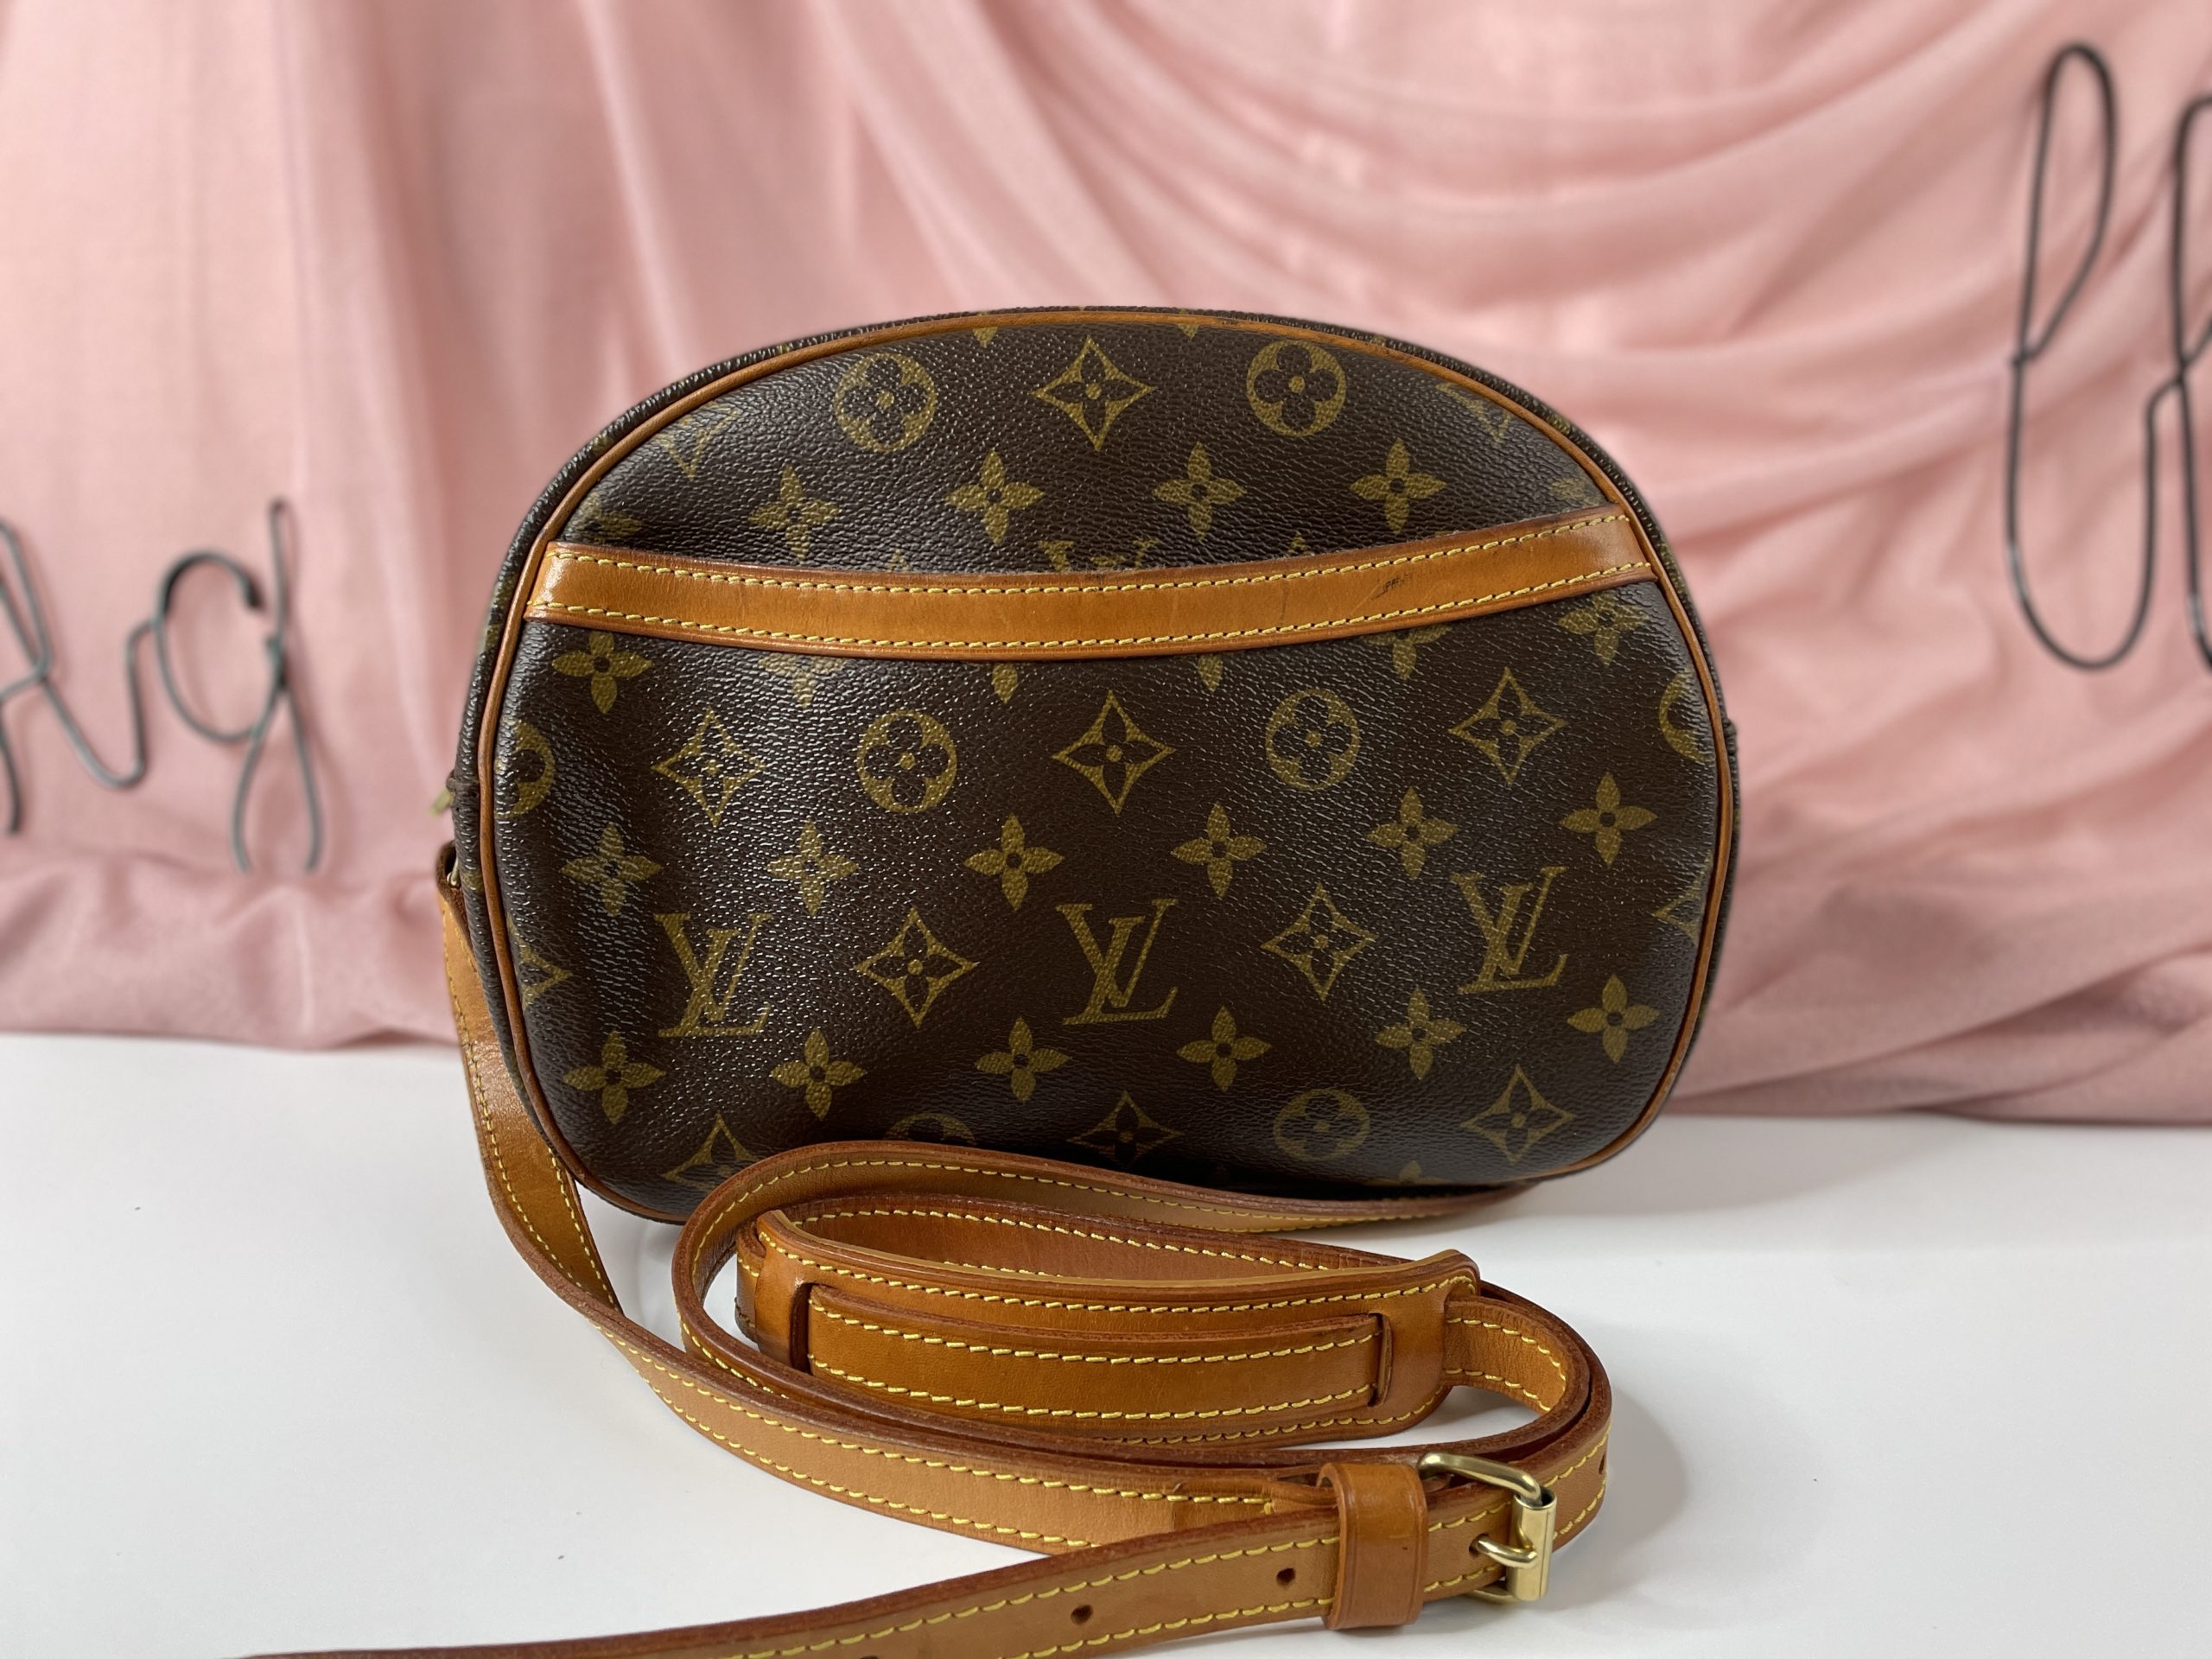 Louis Vuitton Blois – Brand Bag Girl